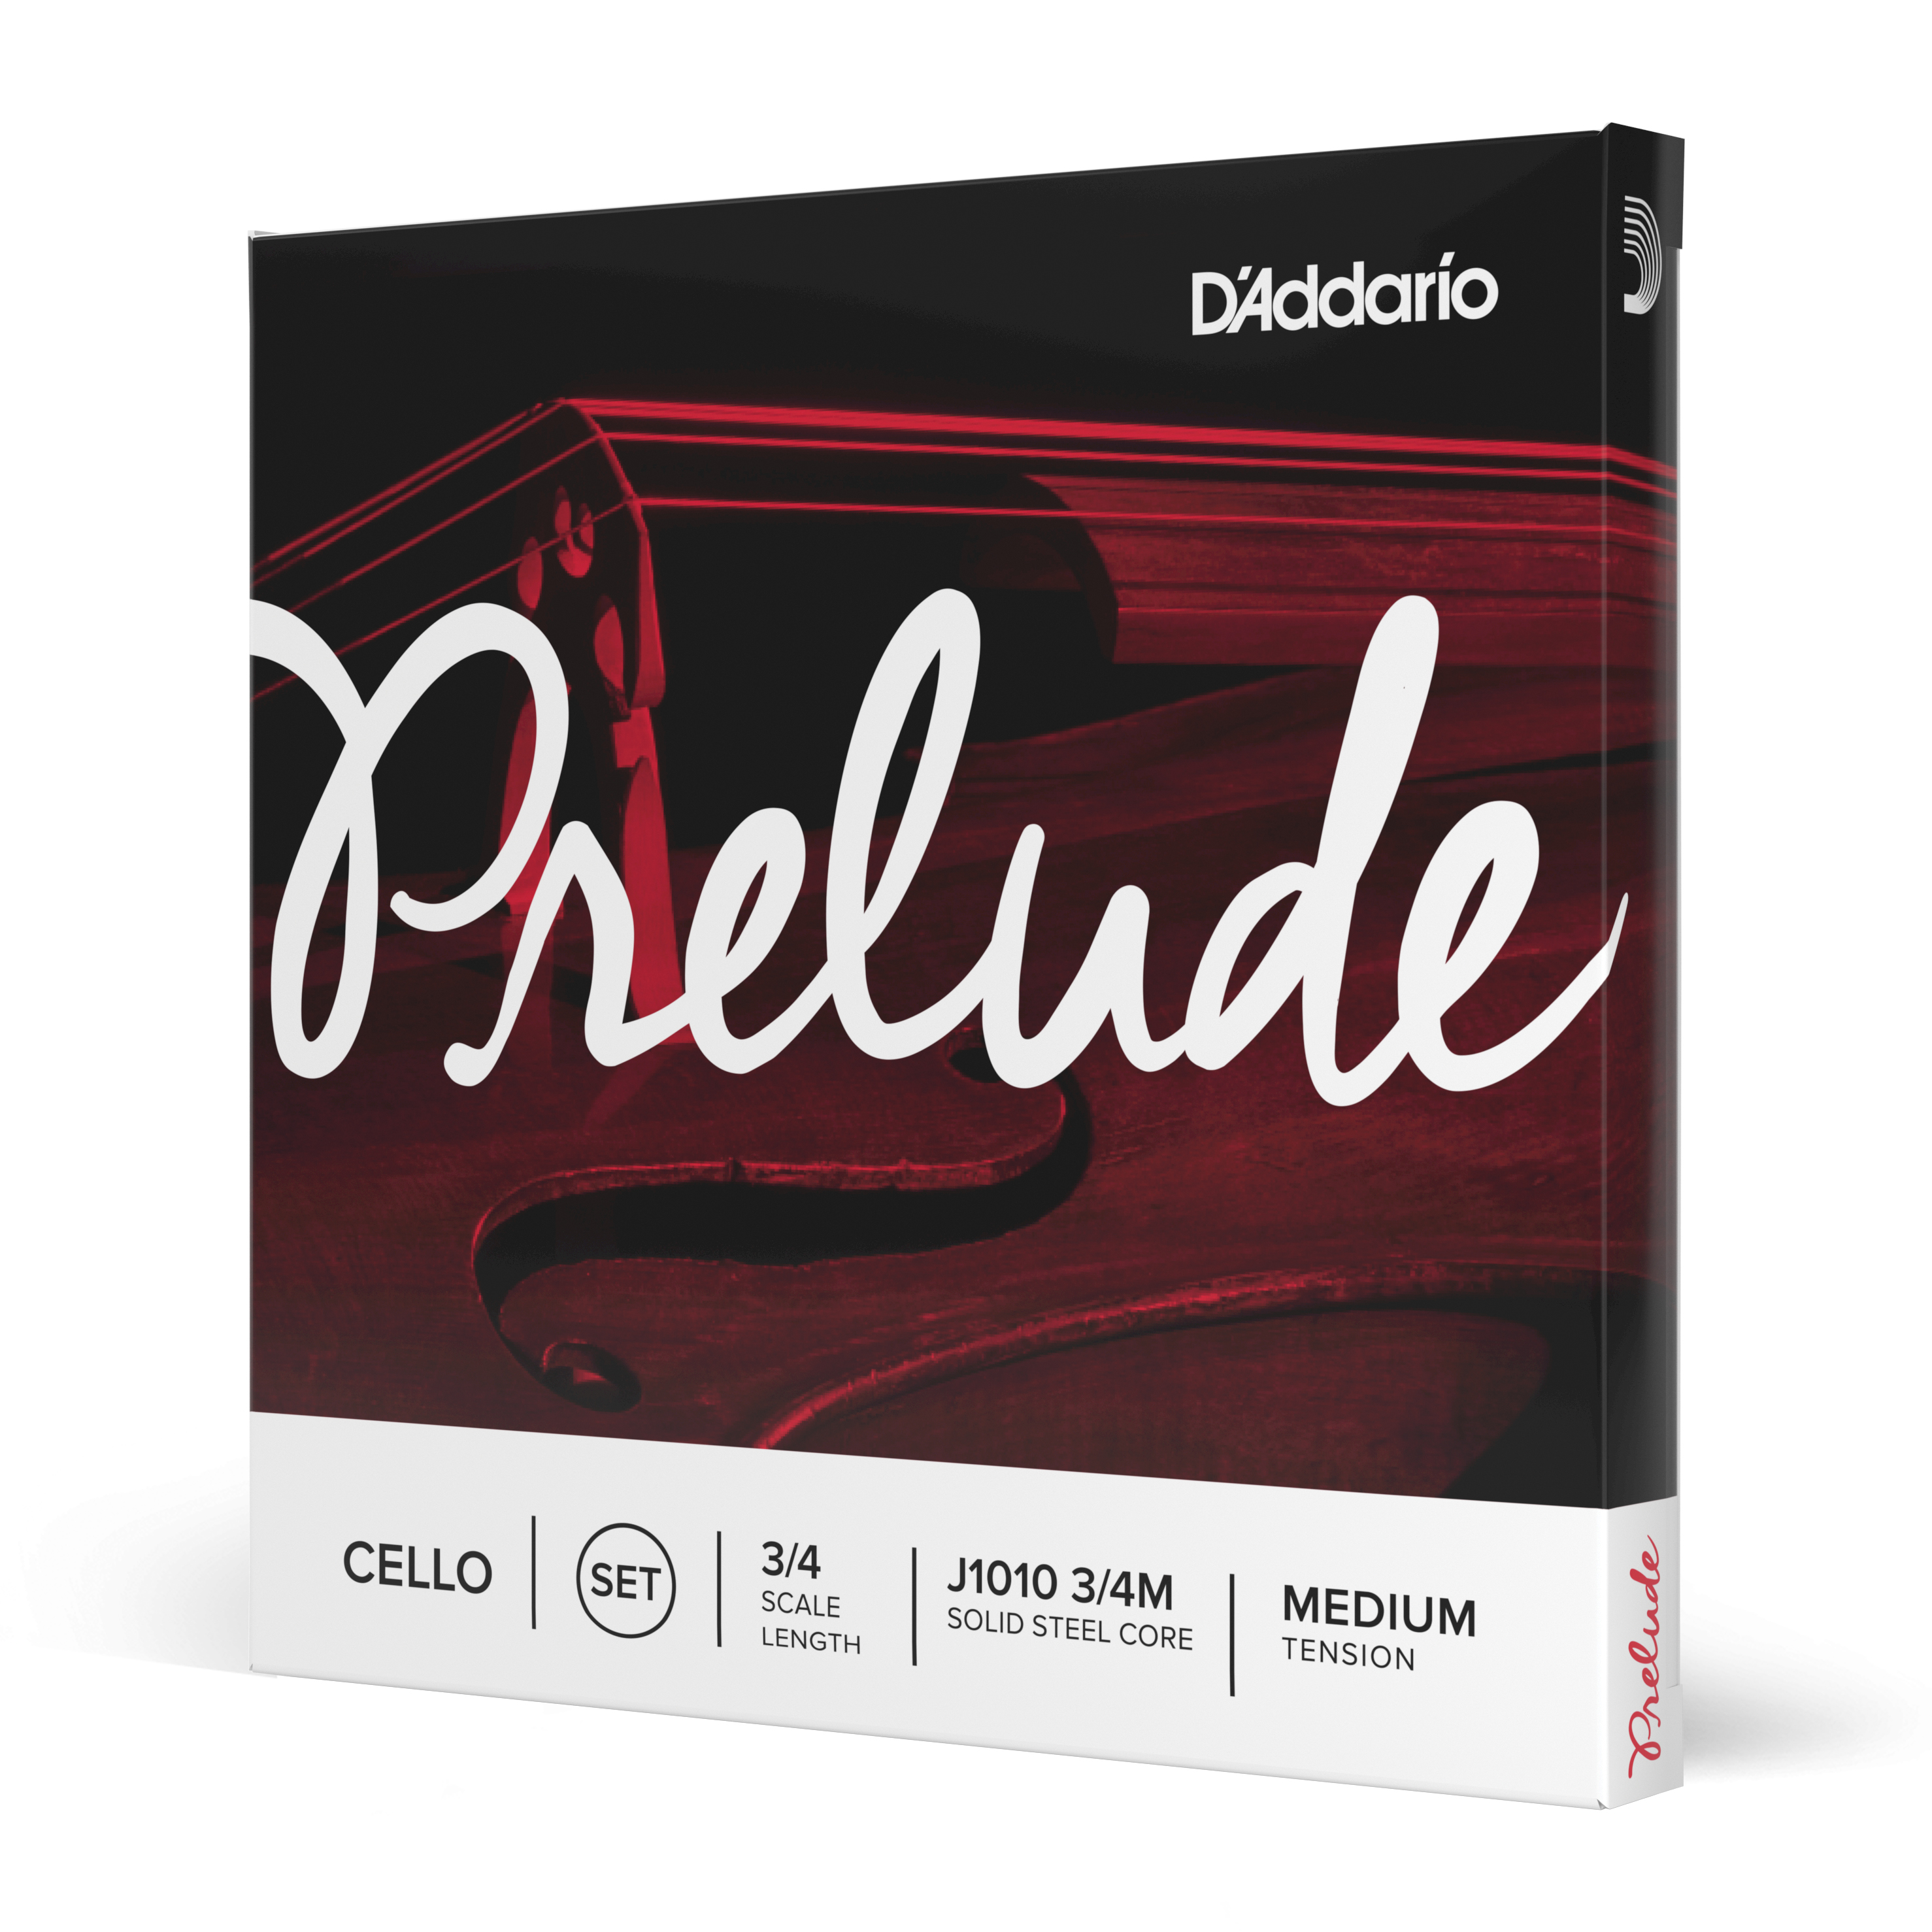 Daddario orchestral it J1010 3/4m set di corde d'addario prelude per violoncello, scala 3/4, tensione media